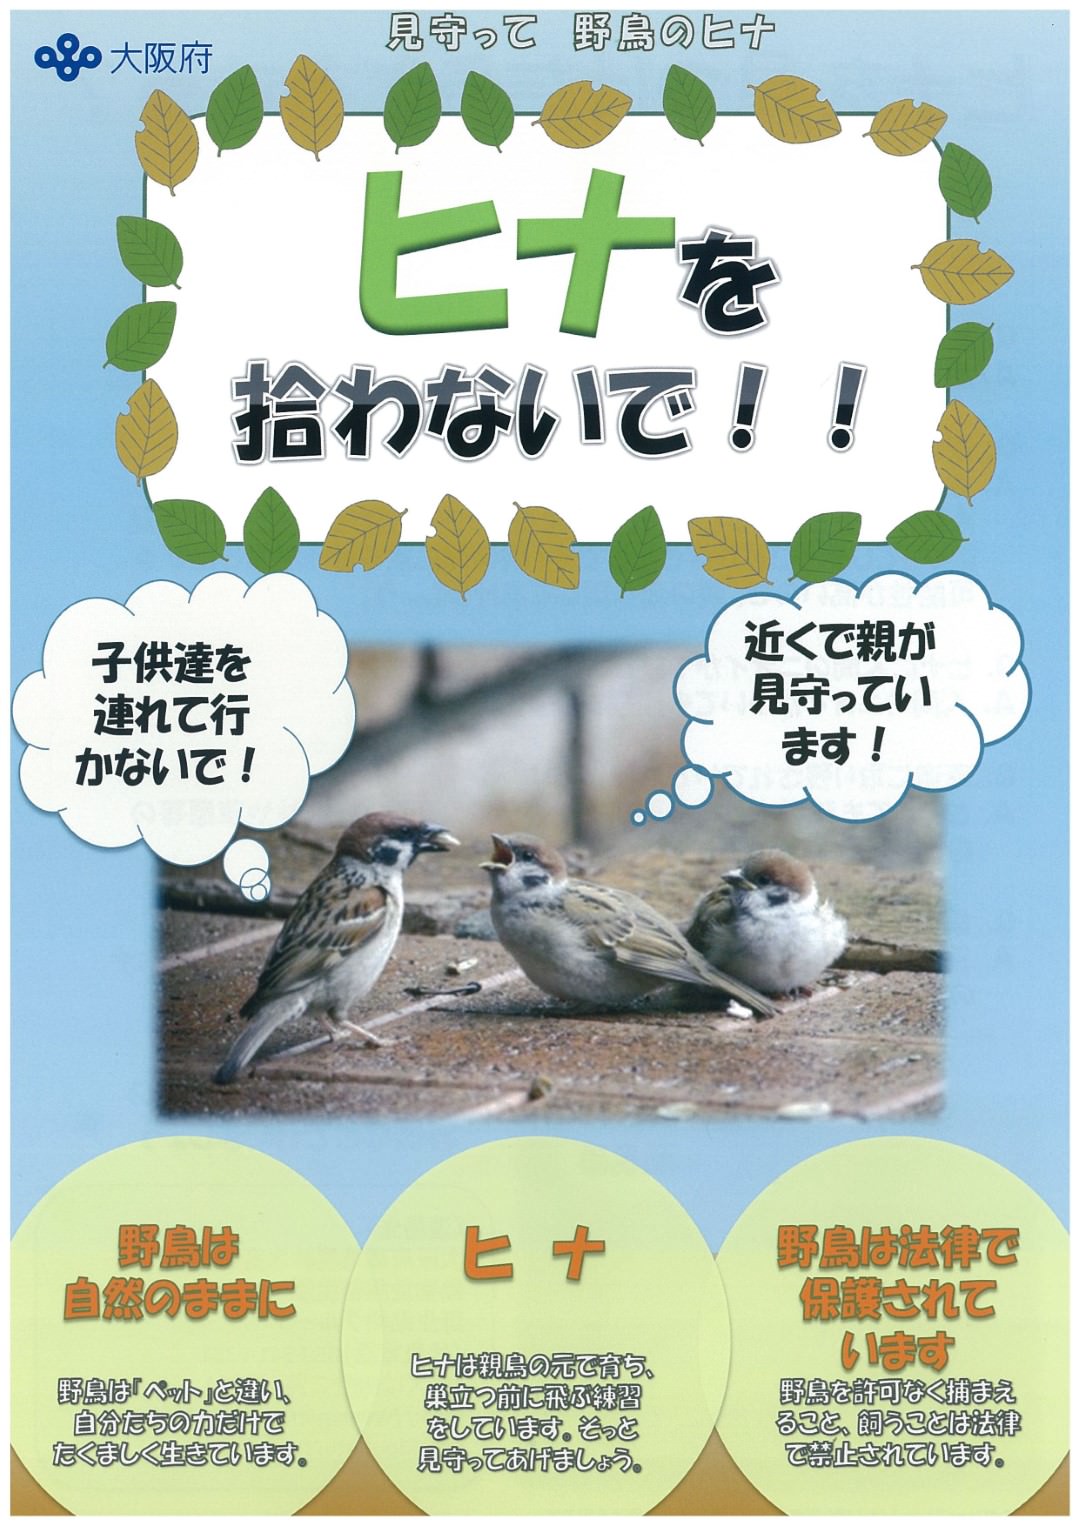 大阪府獣医師会からのお知らせ「ヒナを拾わないで」